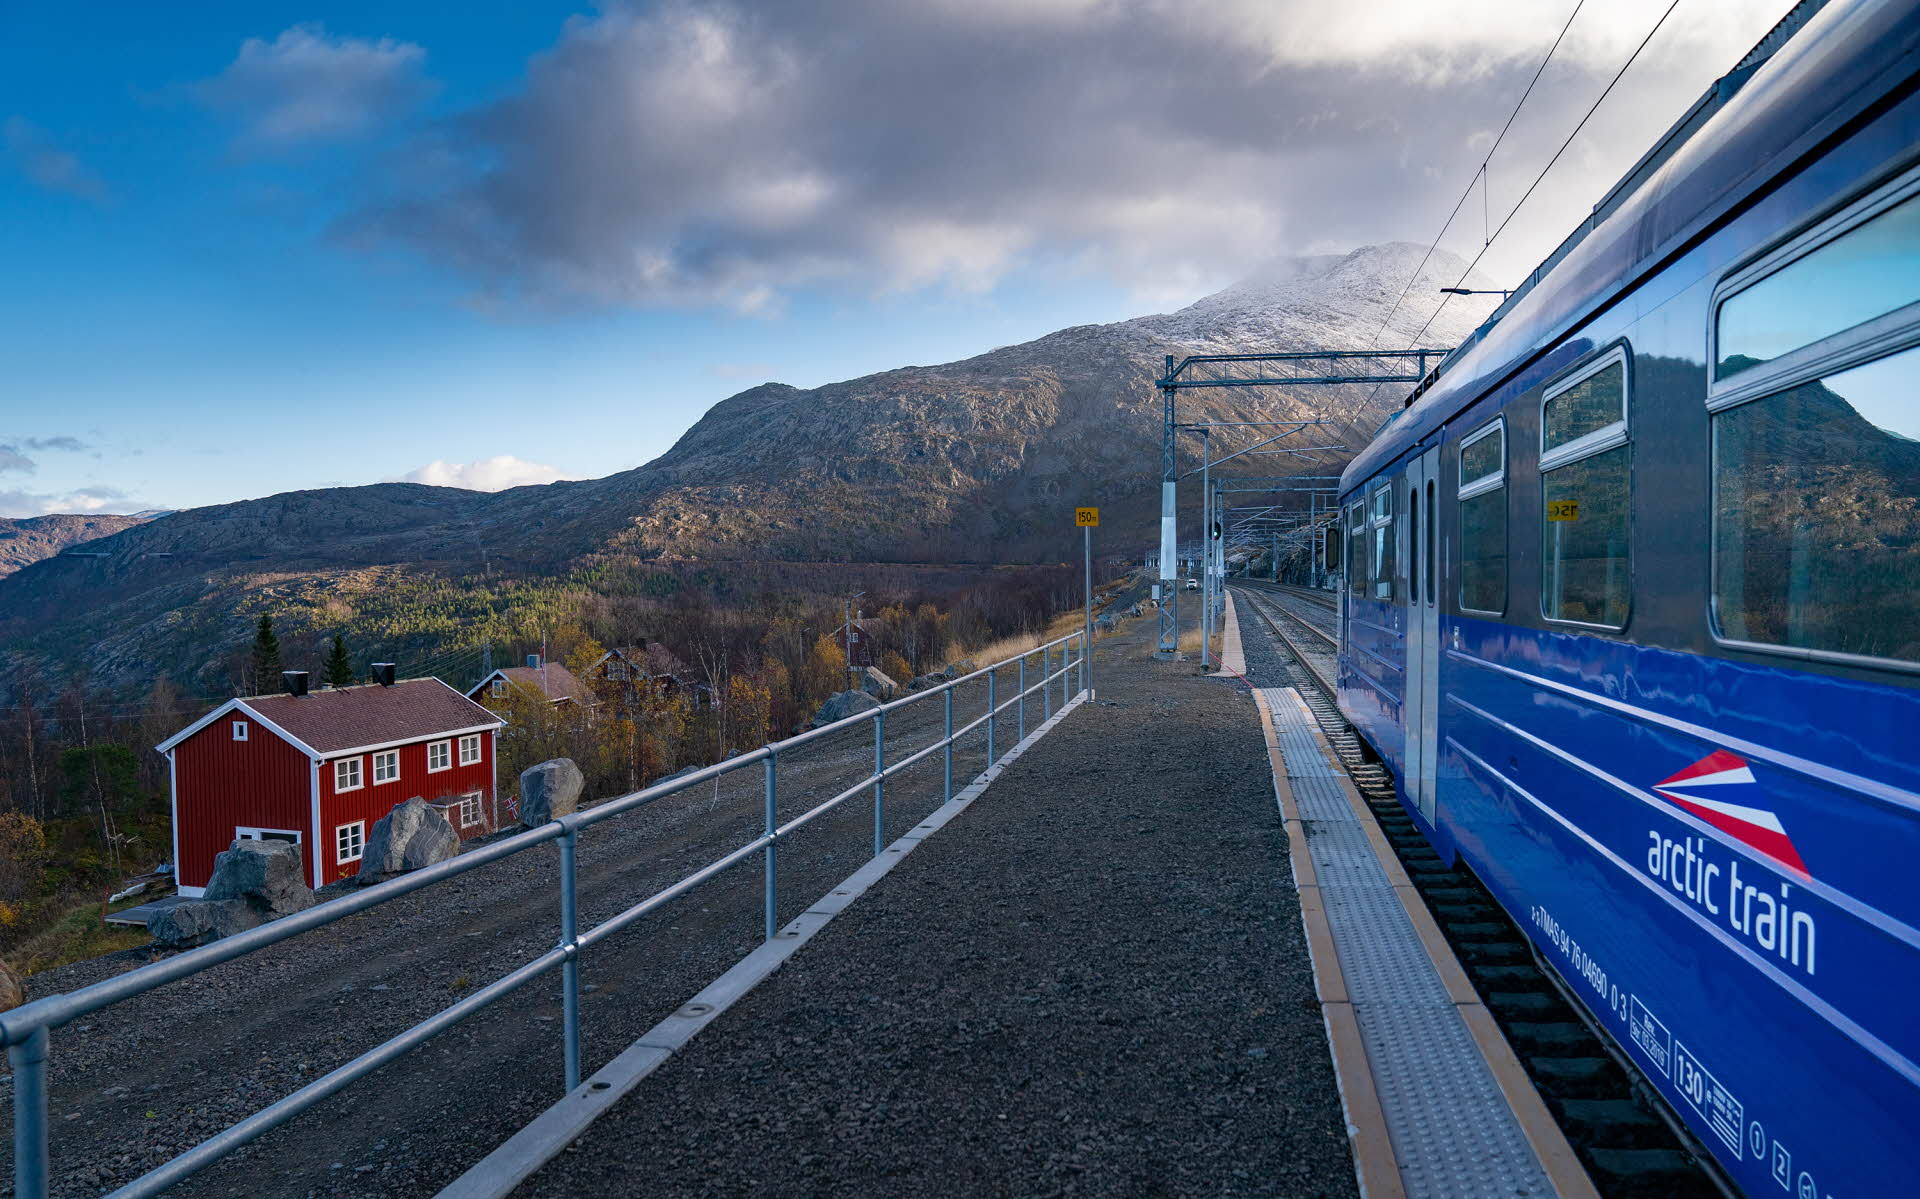 蓝色的北极列车停靠在罗姆巴肯 (Rombak) 车站。下面是红色的房子，列车前方是高山。